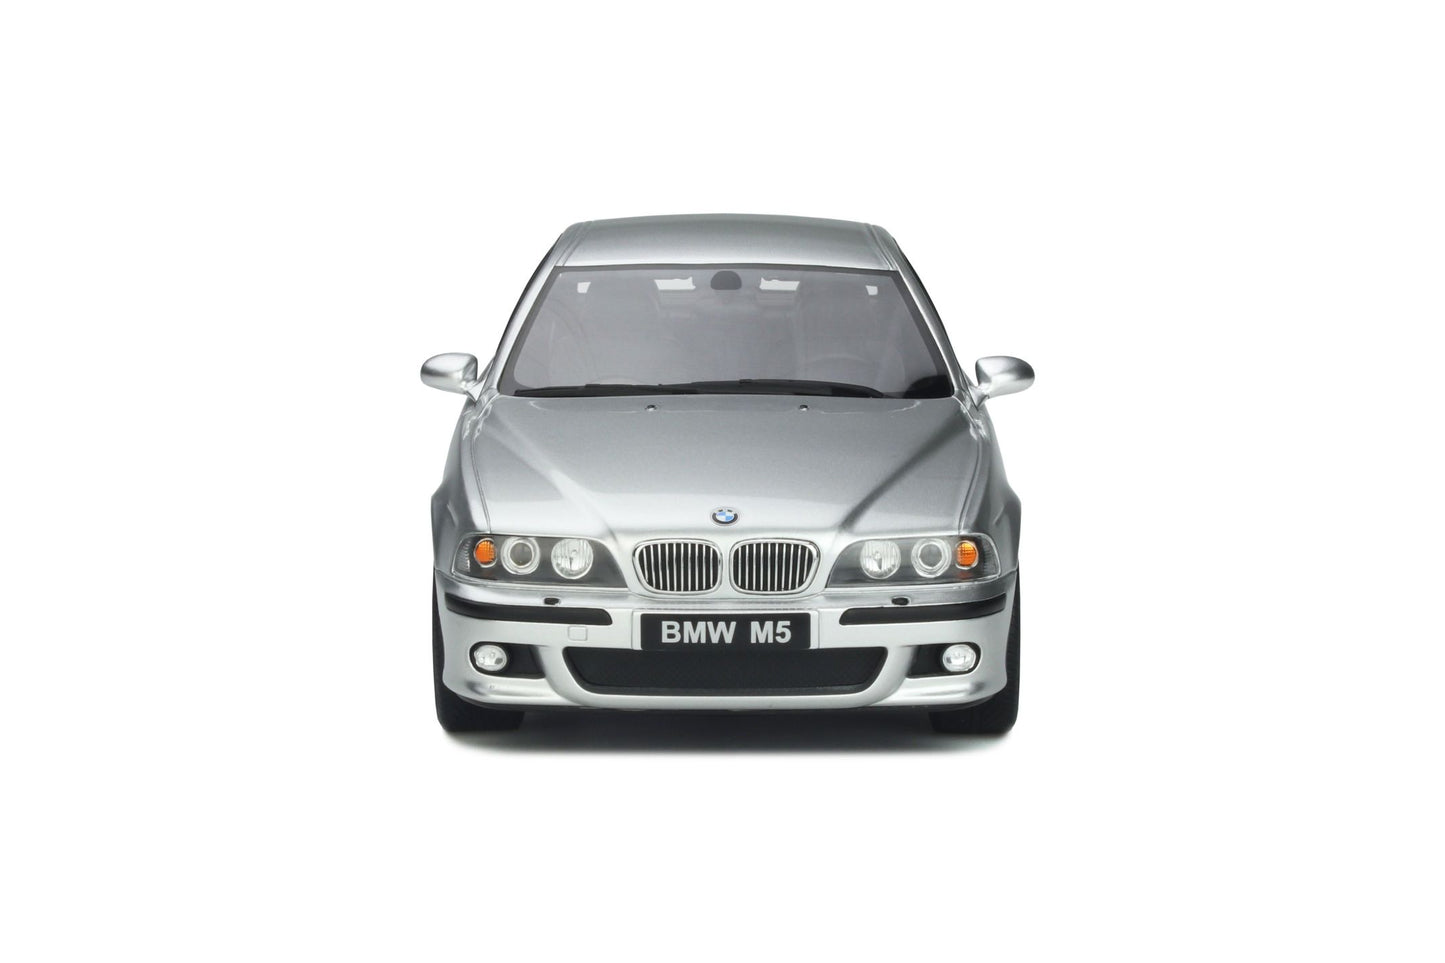 OttOmobile - BMW M5 (E39) (Silver) 1:18 Scale Model Car